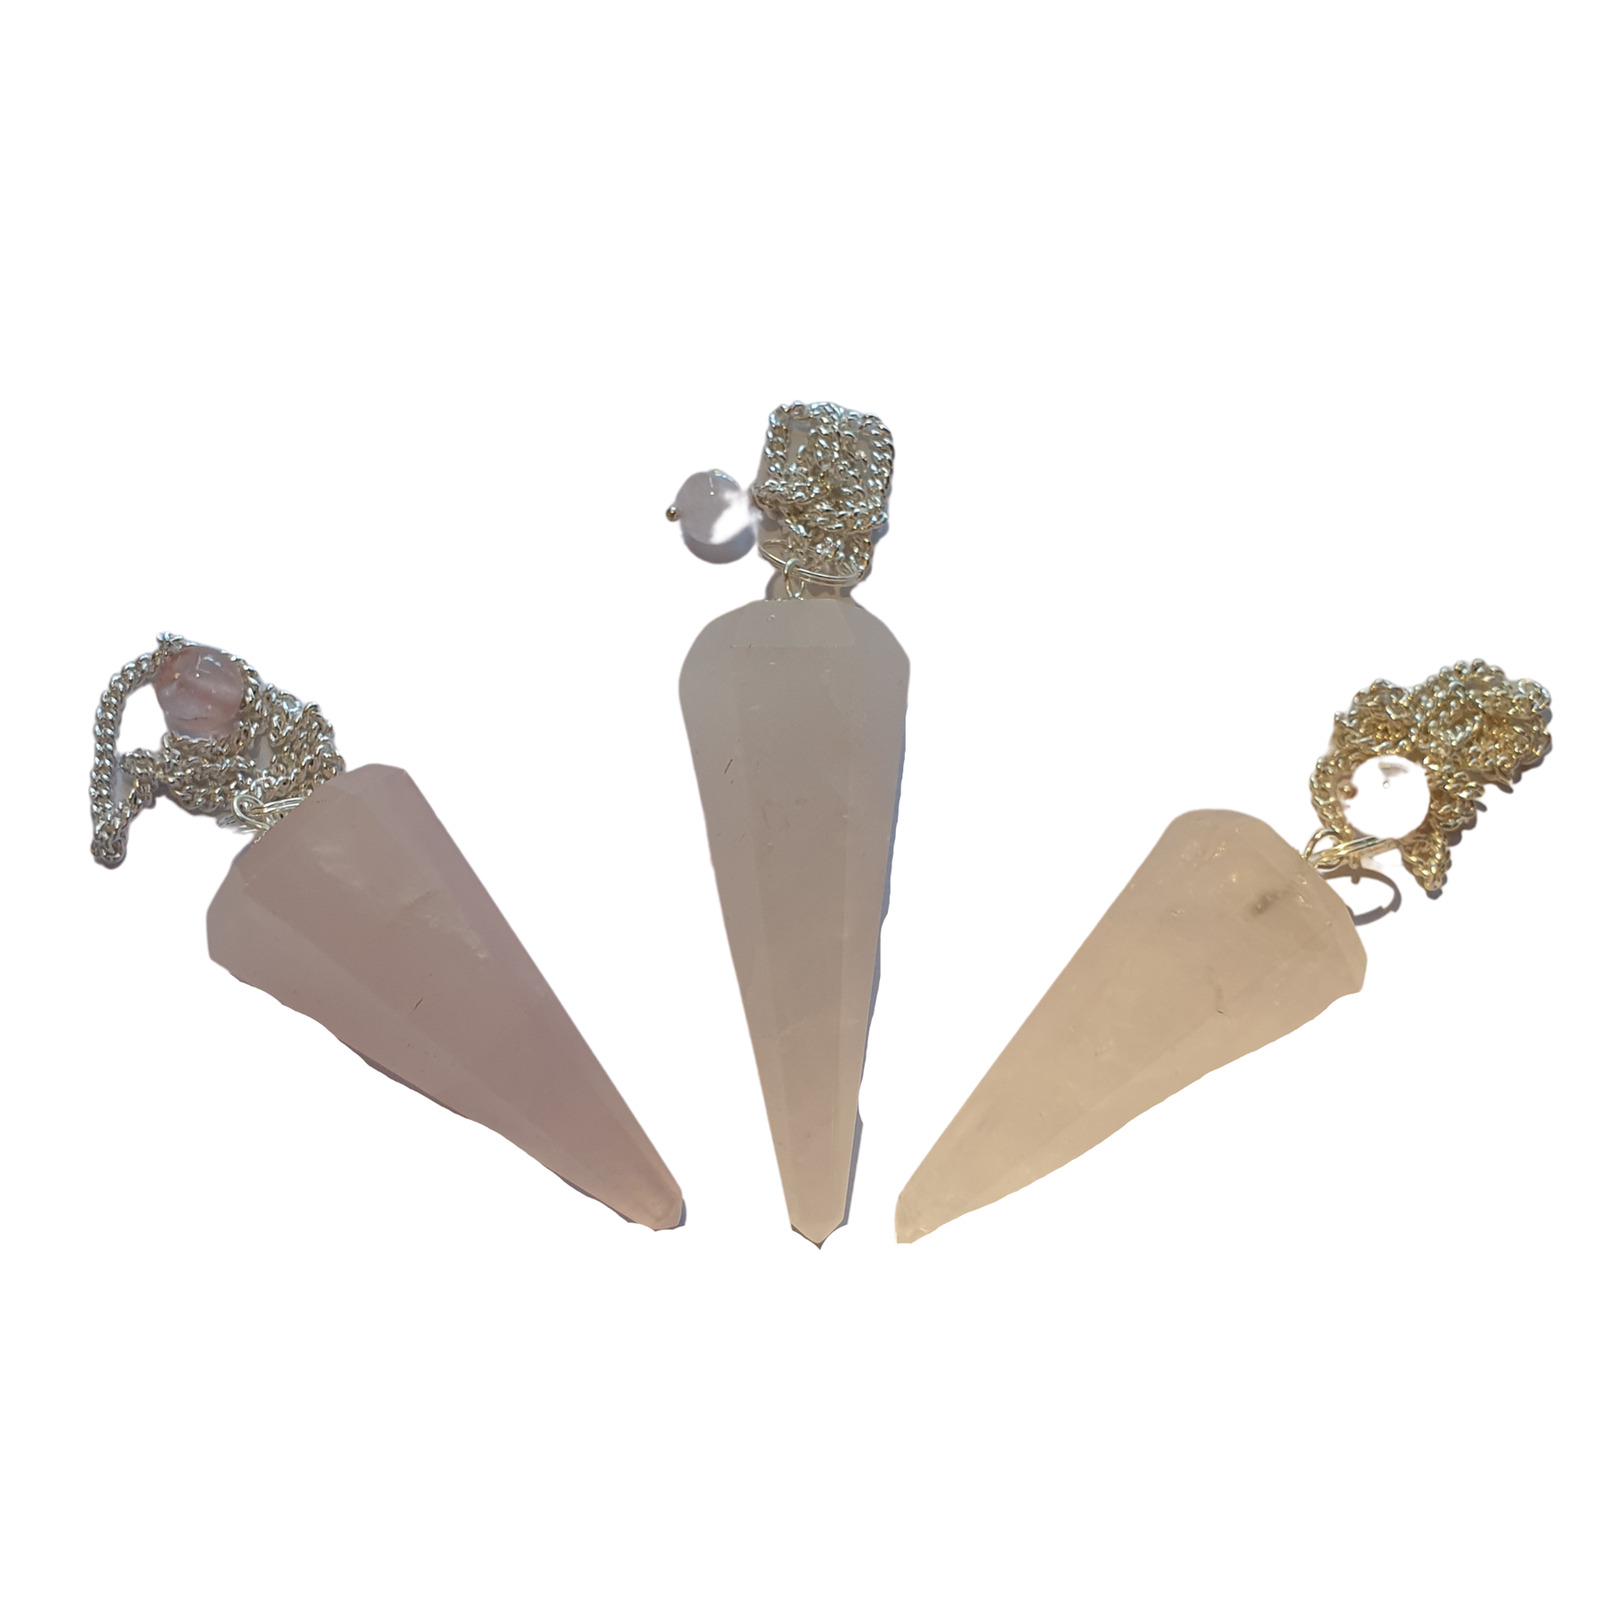 Gemstone Magic Pendulum With Chain - Rose Quartz